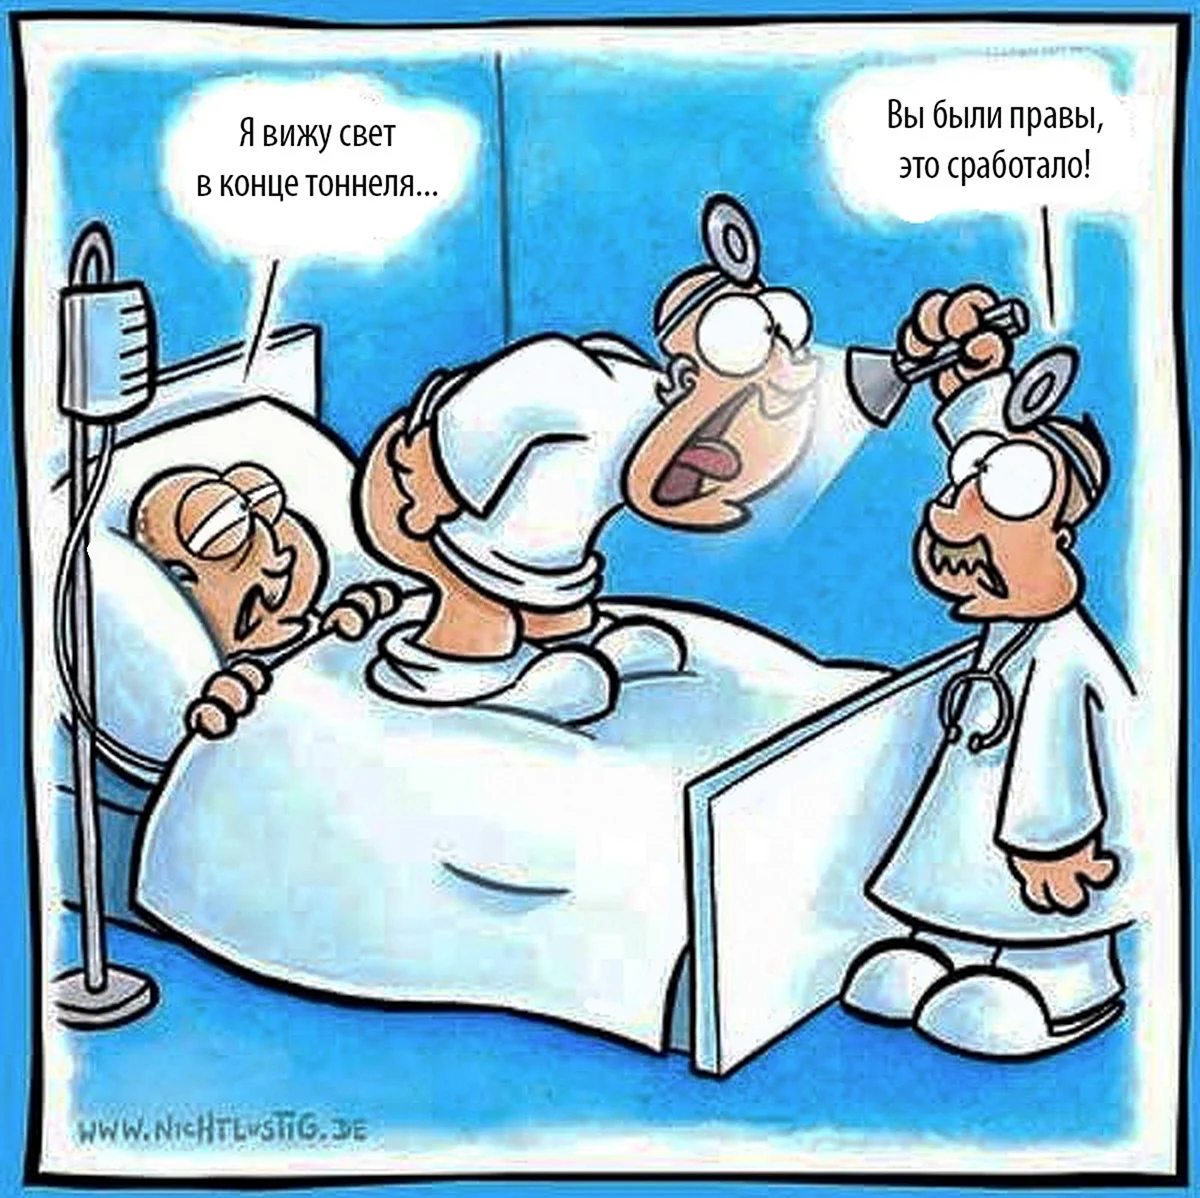 Медицинский юмор в картинках. Картинка